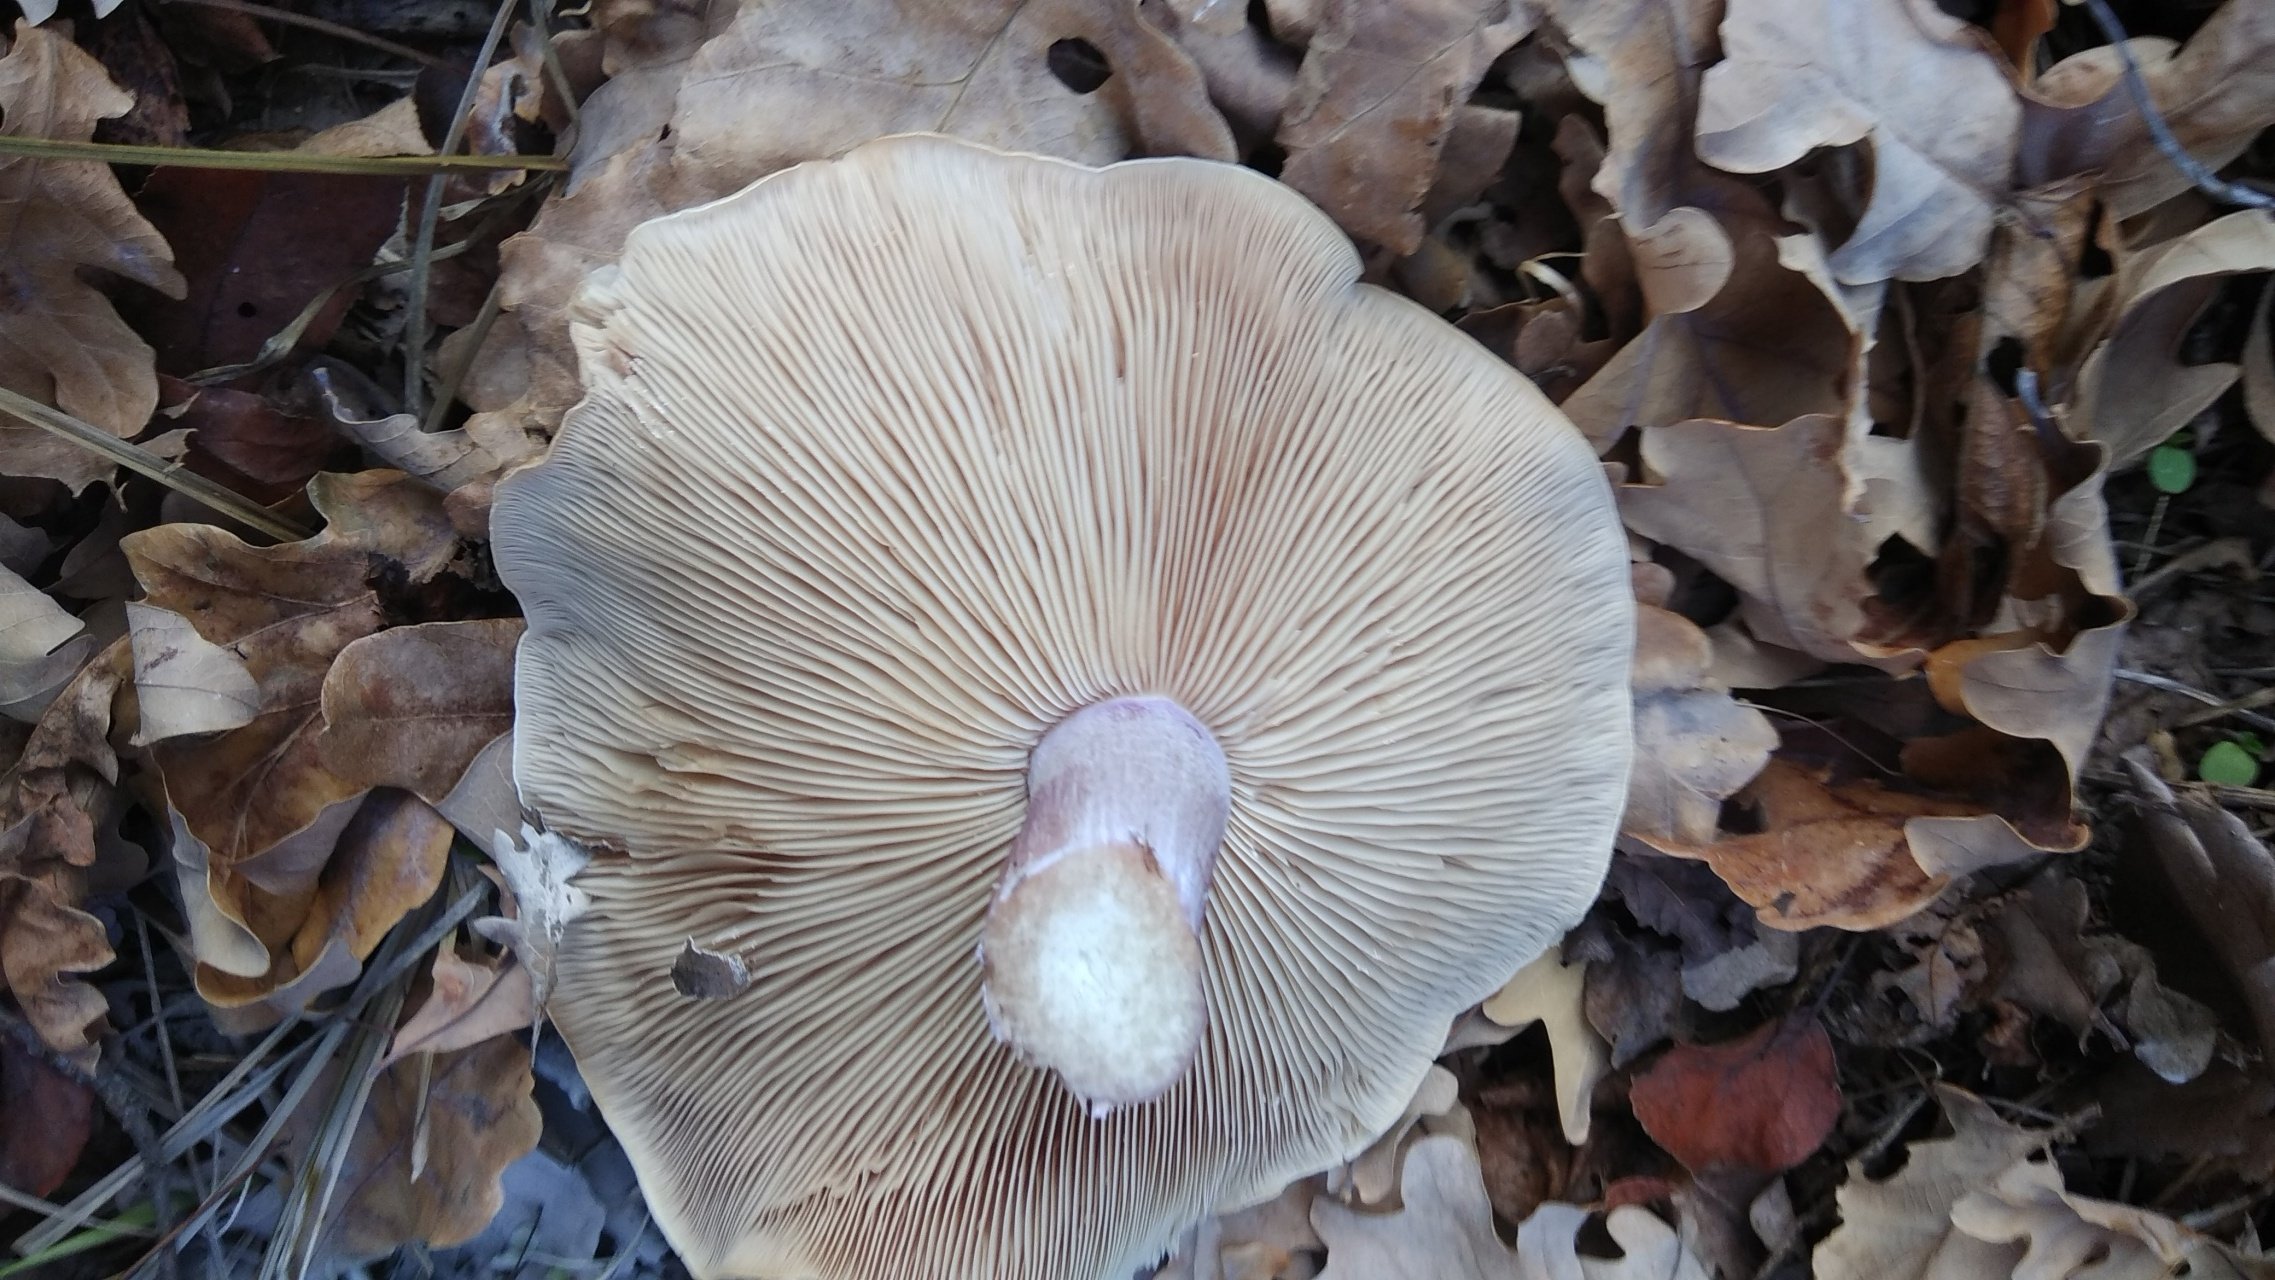 Рядовка (гриб) – описание, виды съедобные и ядовитые, фото